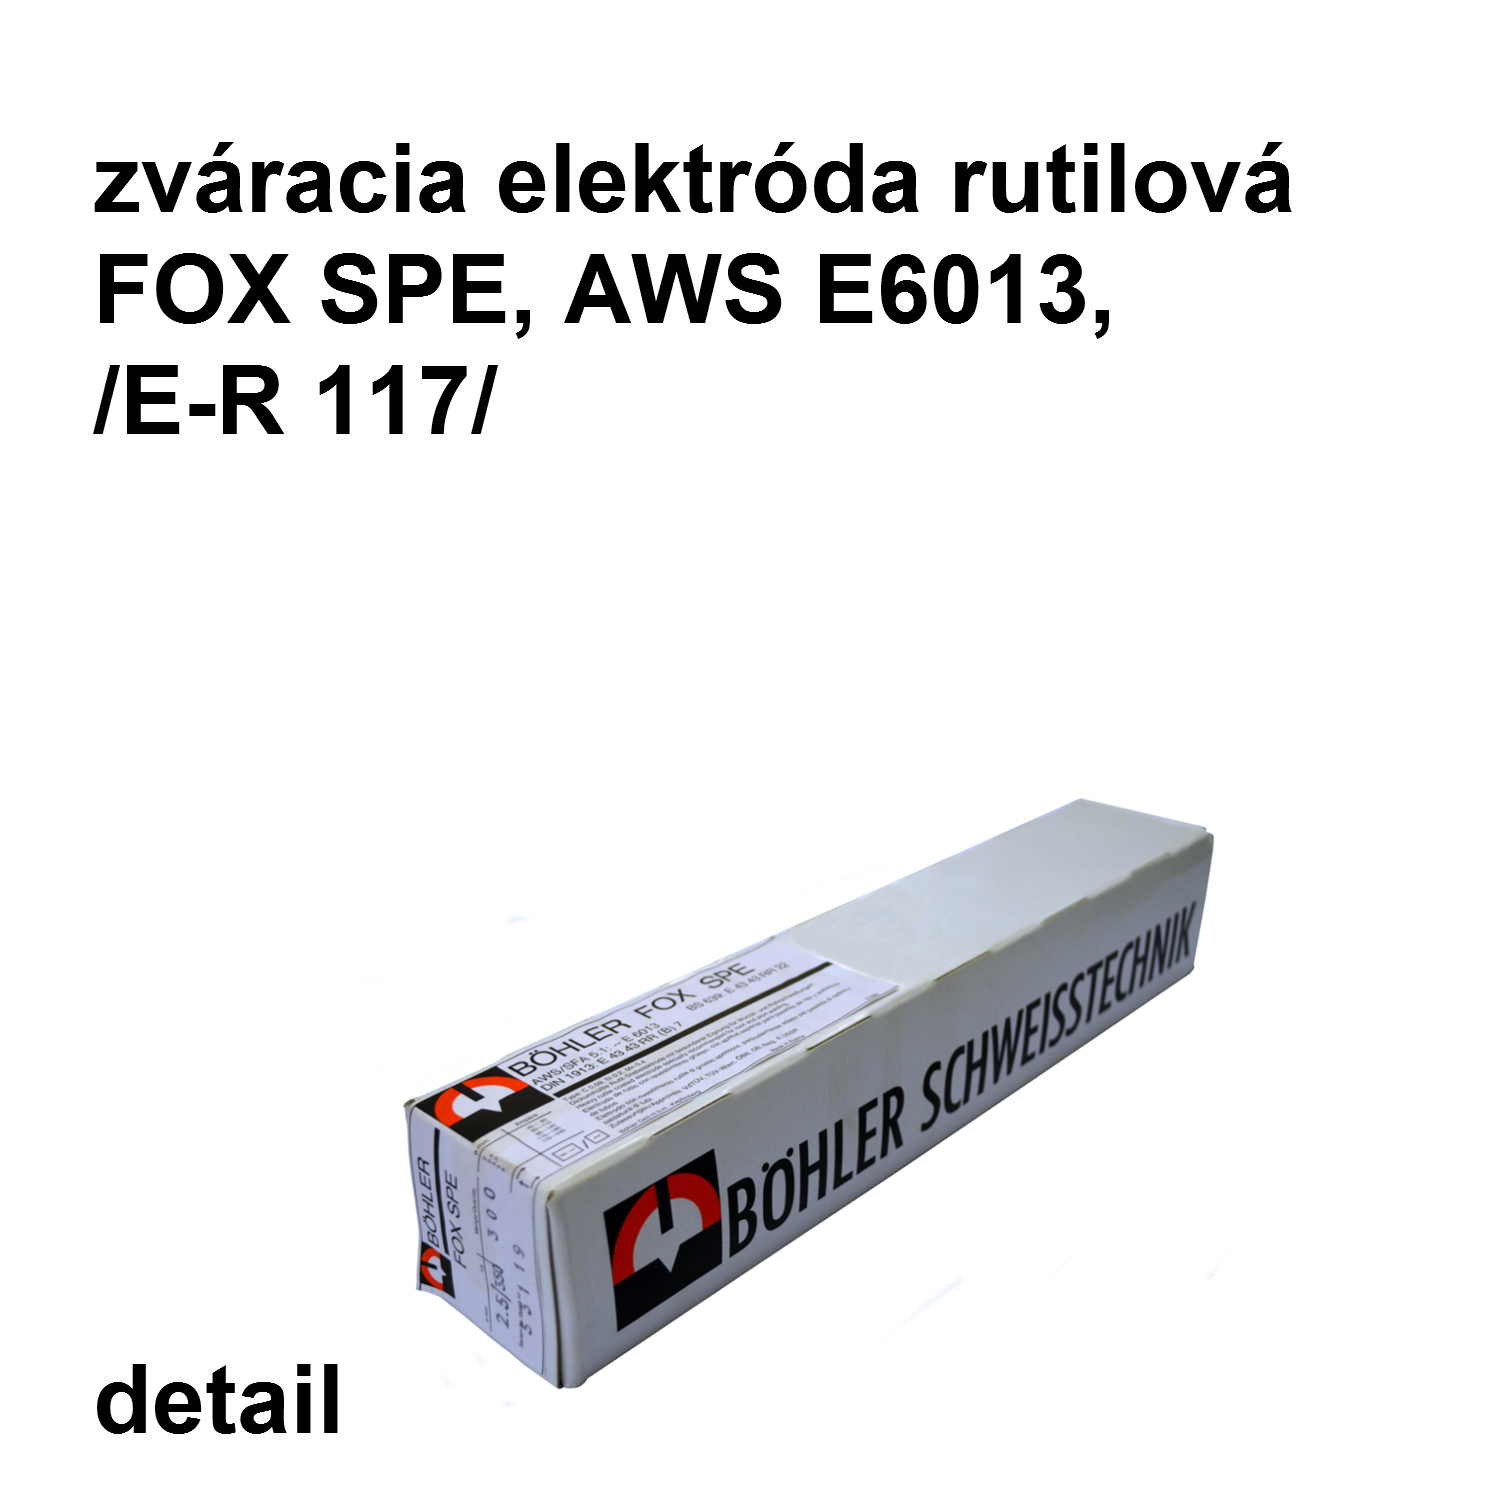 zváracia elektróda FOX SPE  3,25/350 mm, AWS E6013 /E-R117/ rutilová elektróda   